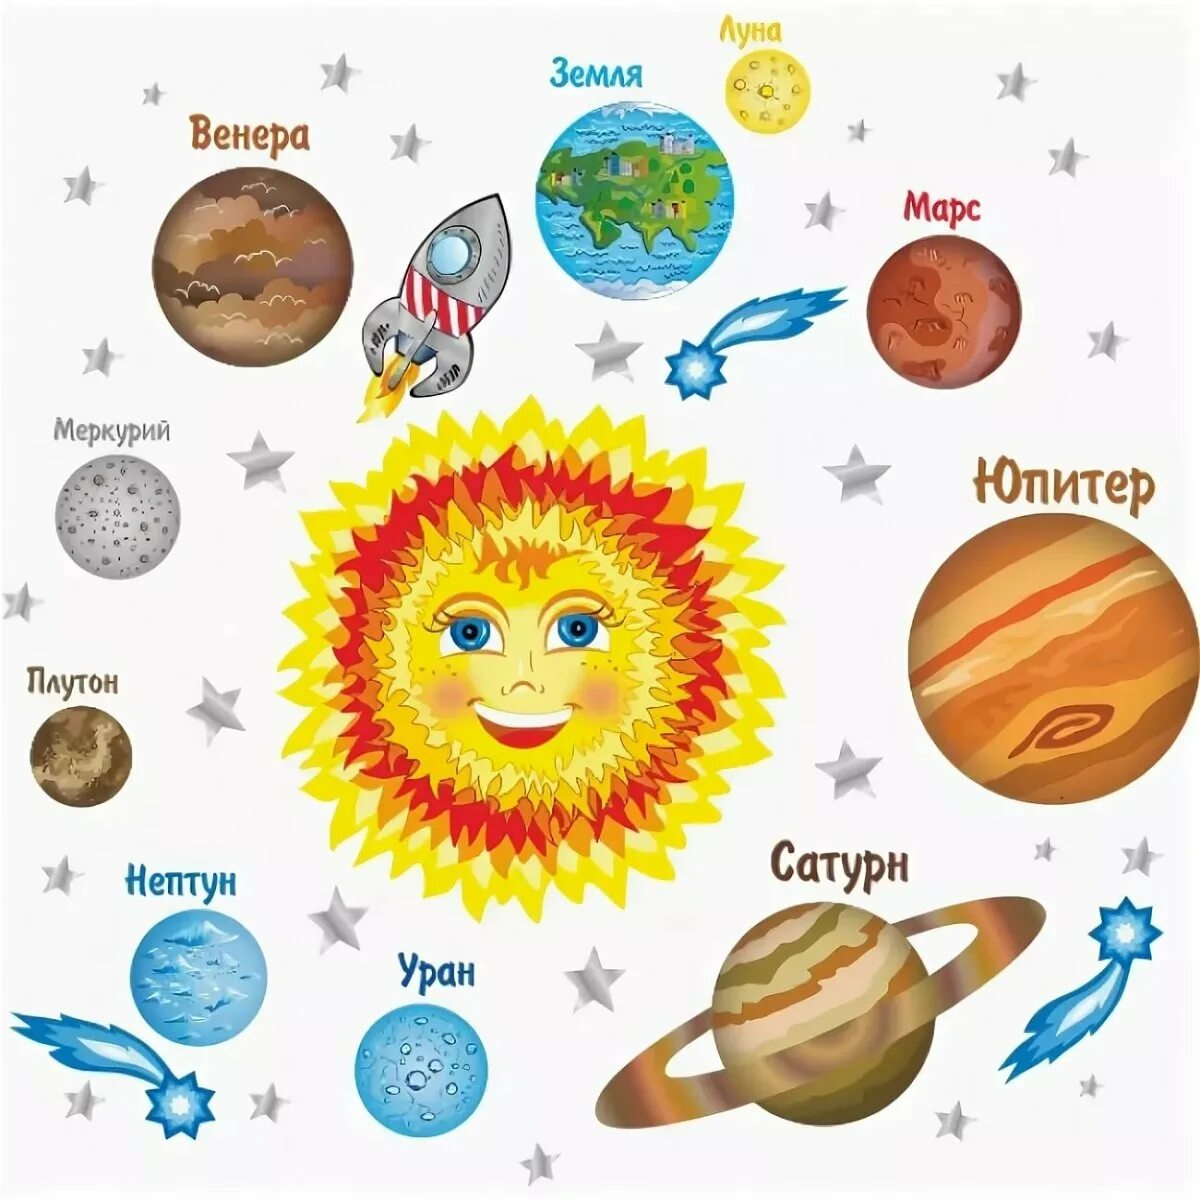 Солнечная система рисунок с названиями планет для детей. Солнечная система для дет. С12нечная система 32я 3етей. Планеты Солнечная системы д я детей. Солнце картинка для детей космос